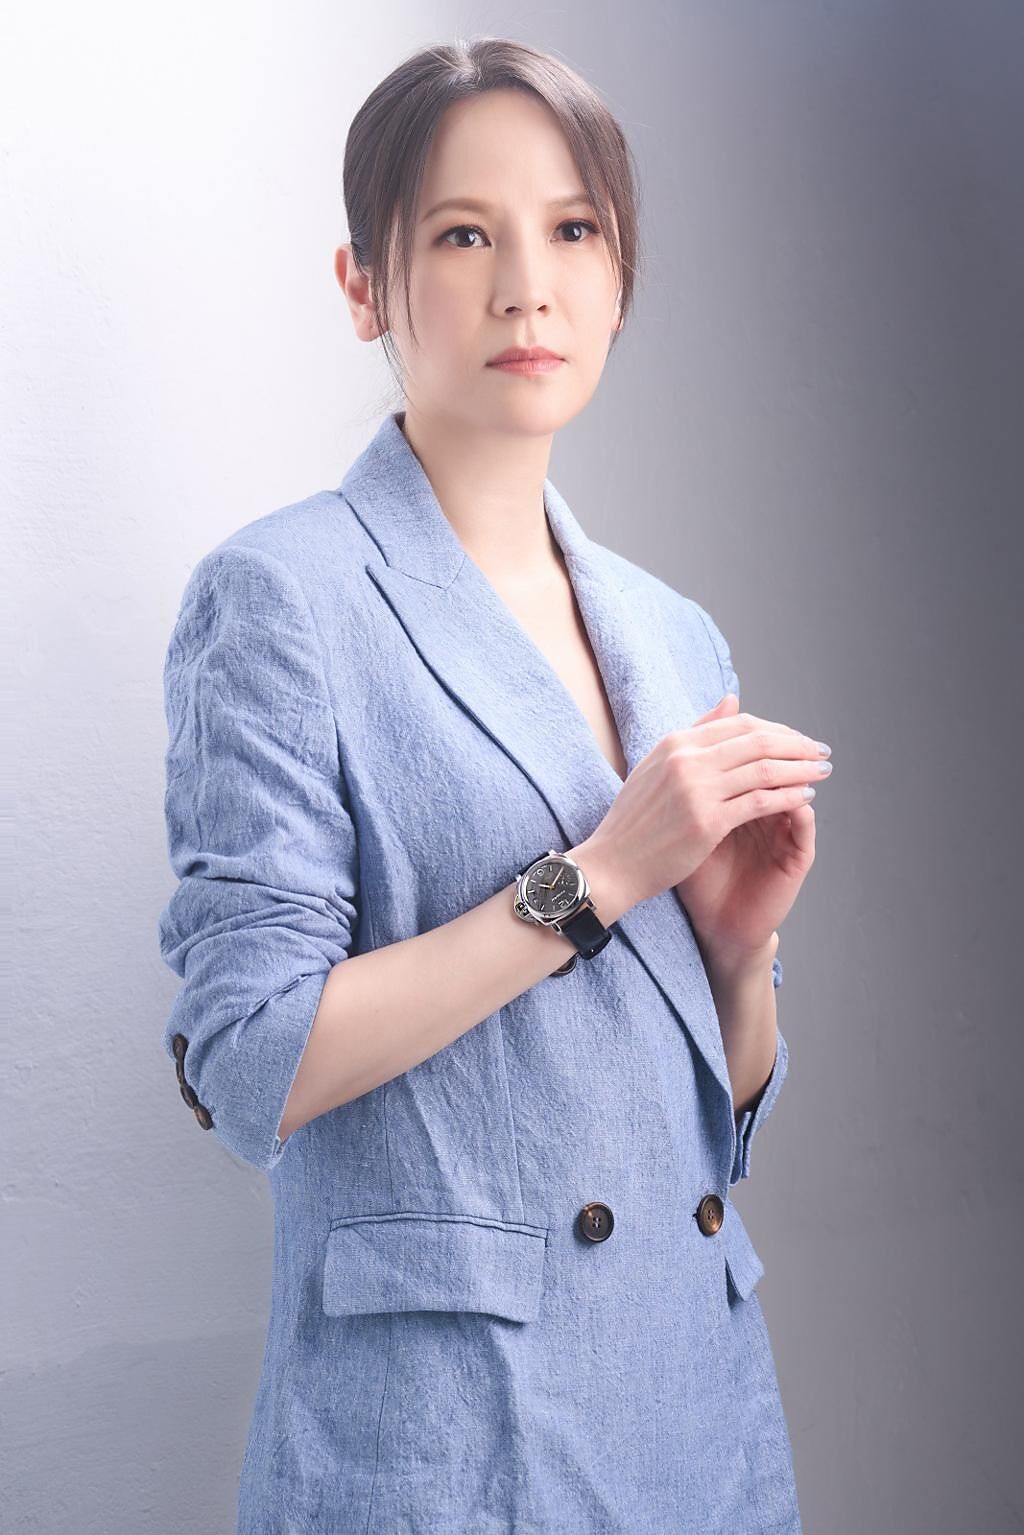 歌后楊乃文以淺藍色套裝搭配Luminor Due精鋼腕表（19萬2000元），簡約造型流露知性品味，完美詮釋歌壇女爵的優雅尊貴。（JOJ PHOTO攝，服裝提供／Brunello Cucinelli）